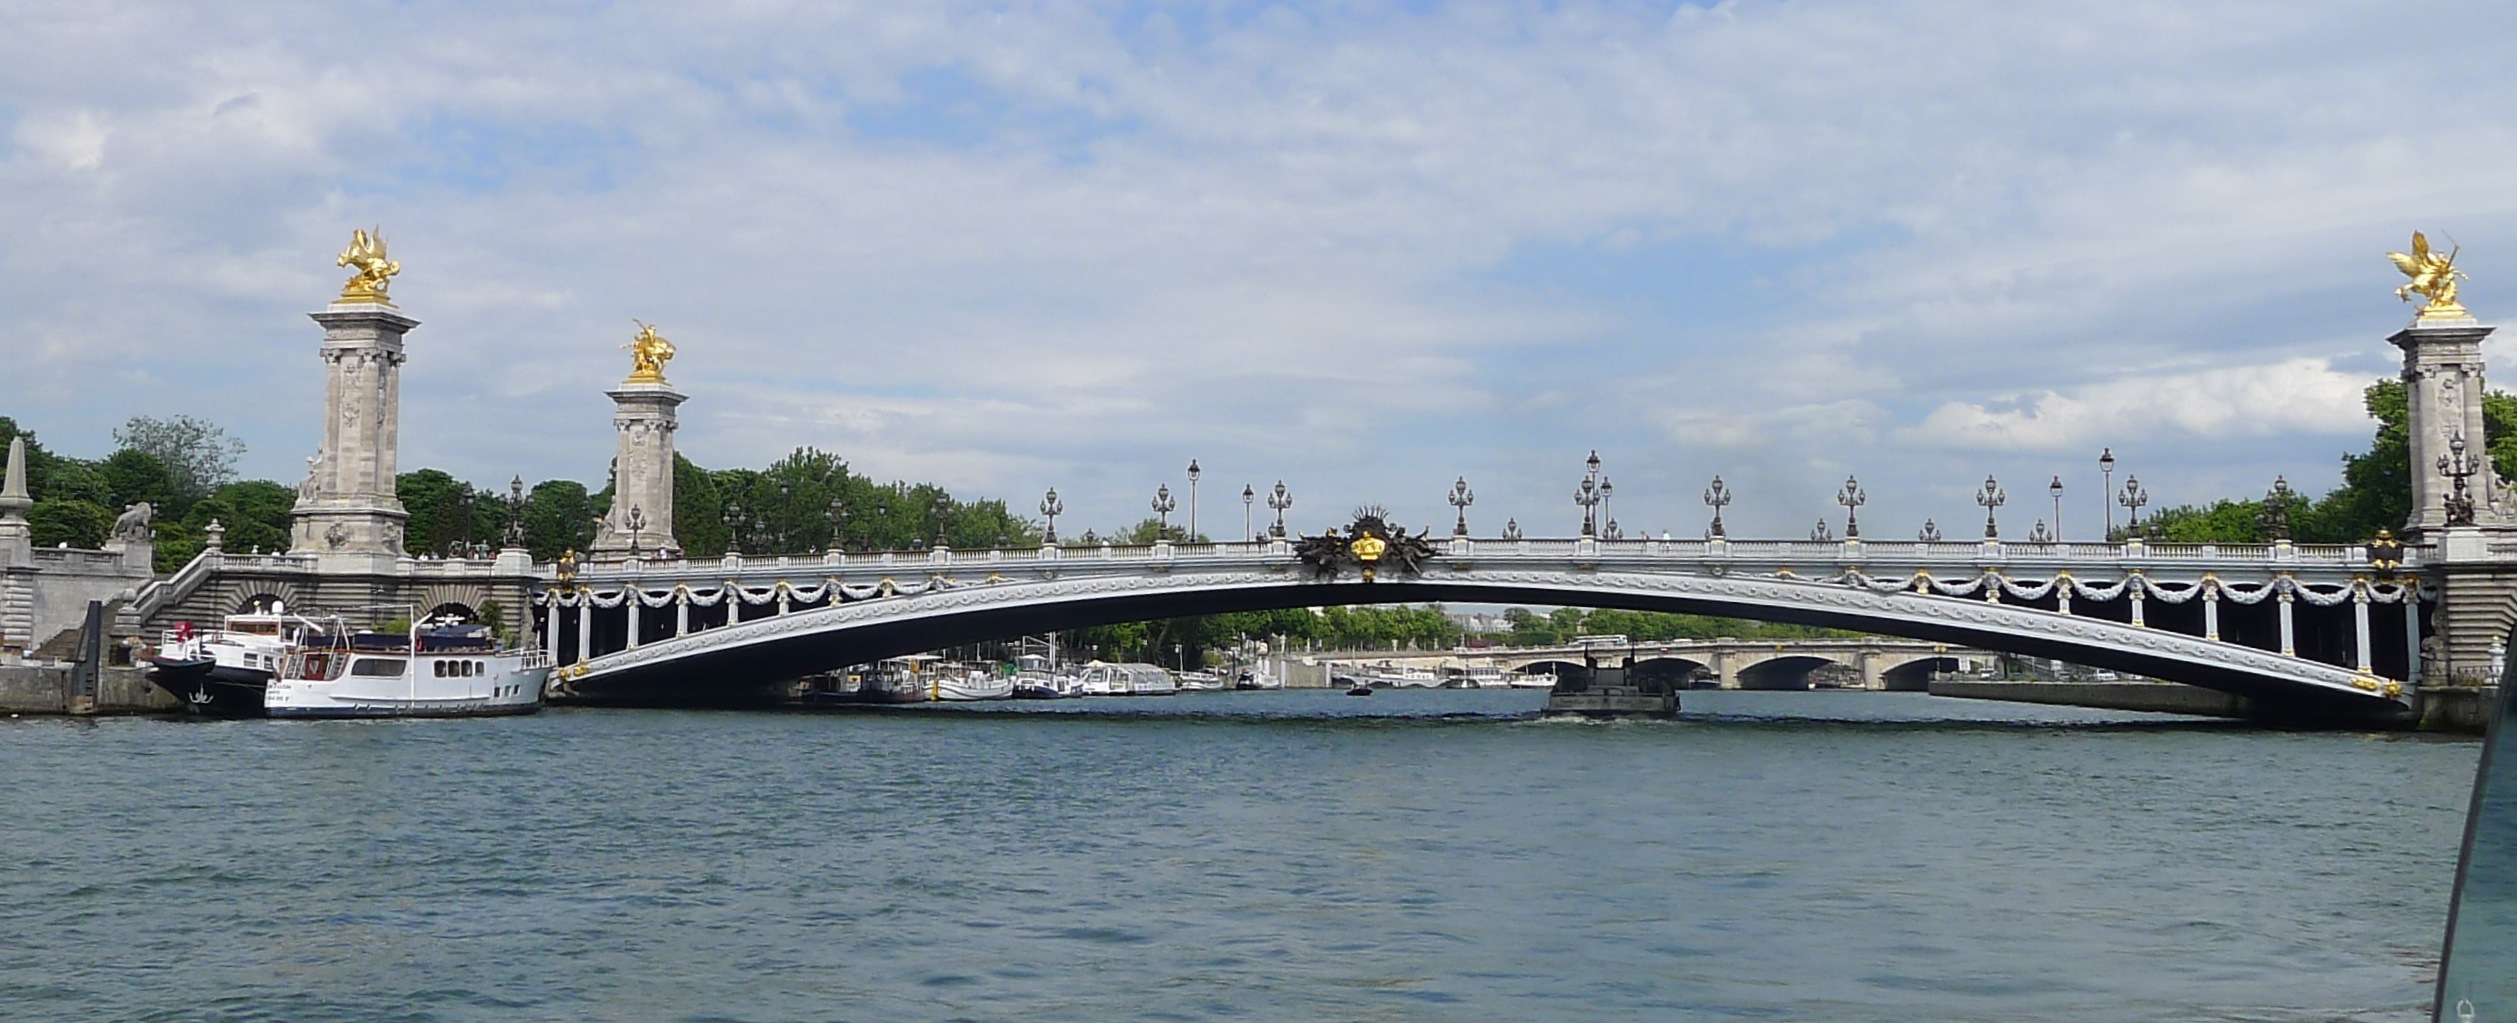 Pont Alexandre III – the most spectacular bridge in Paris | Paris ...